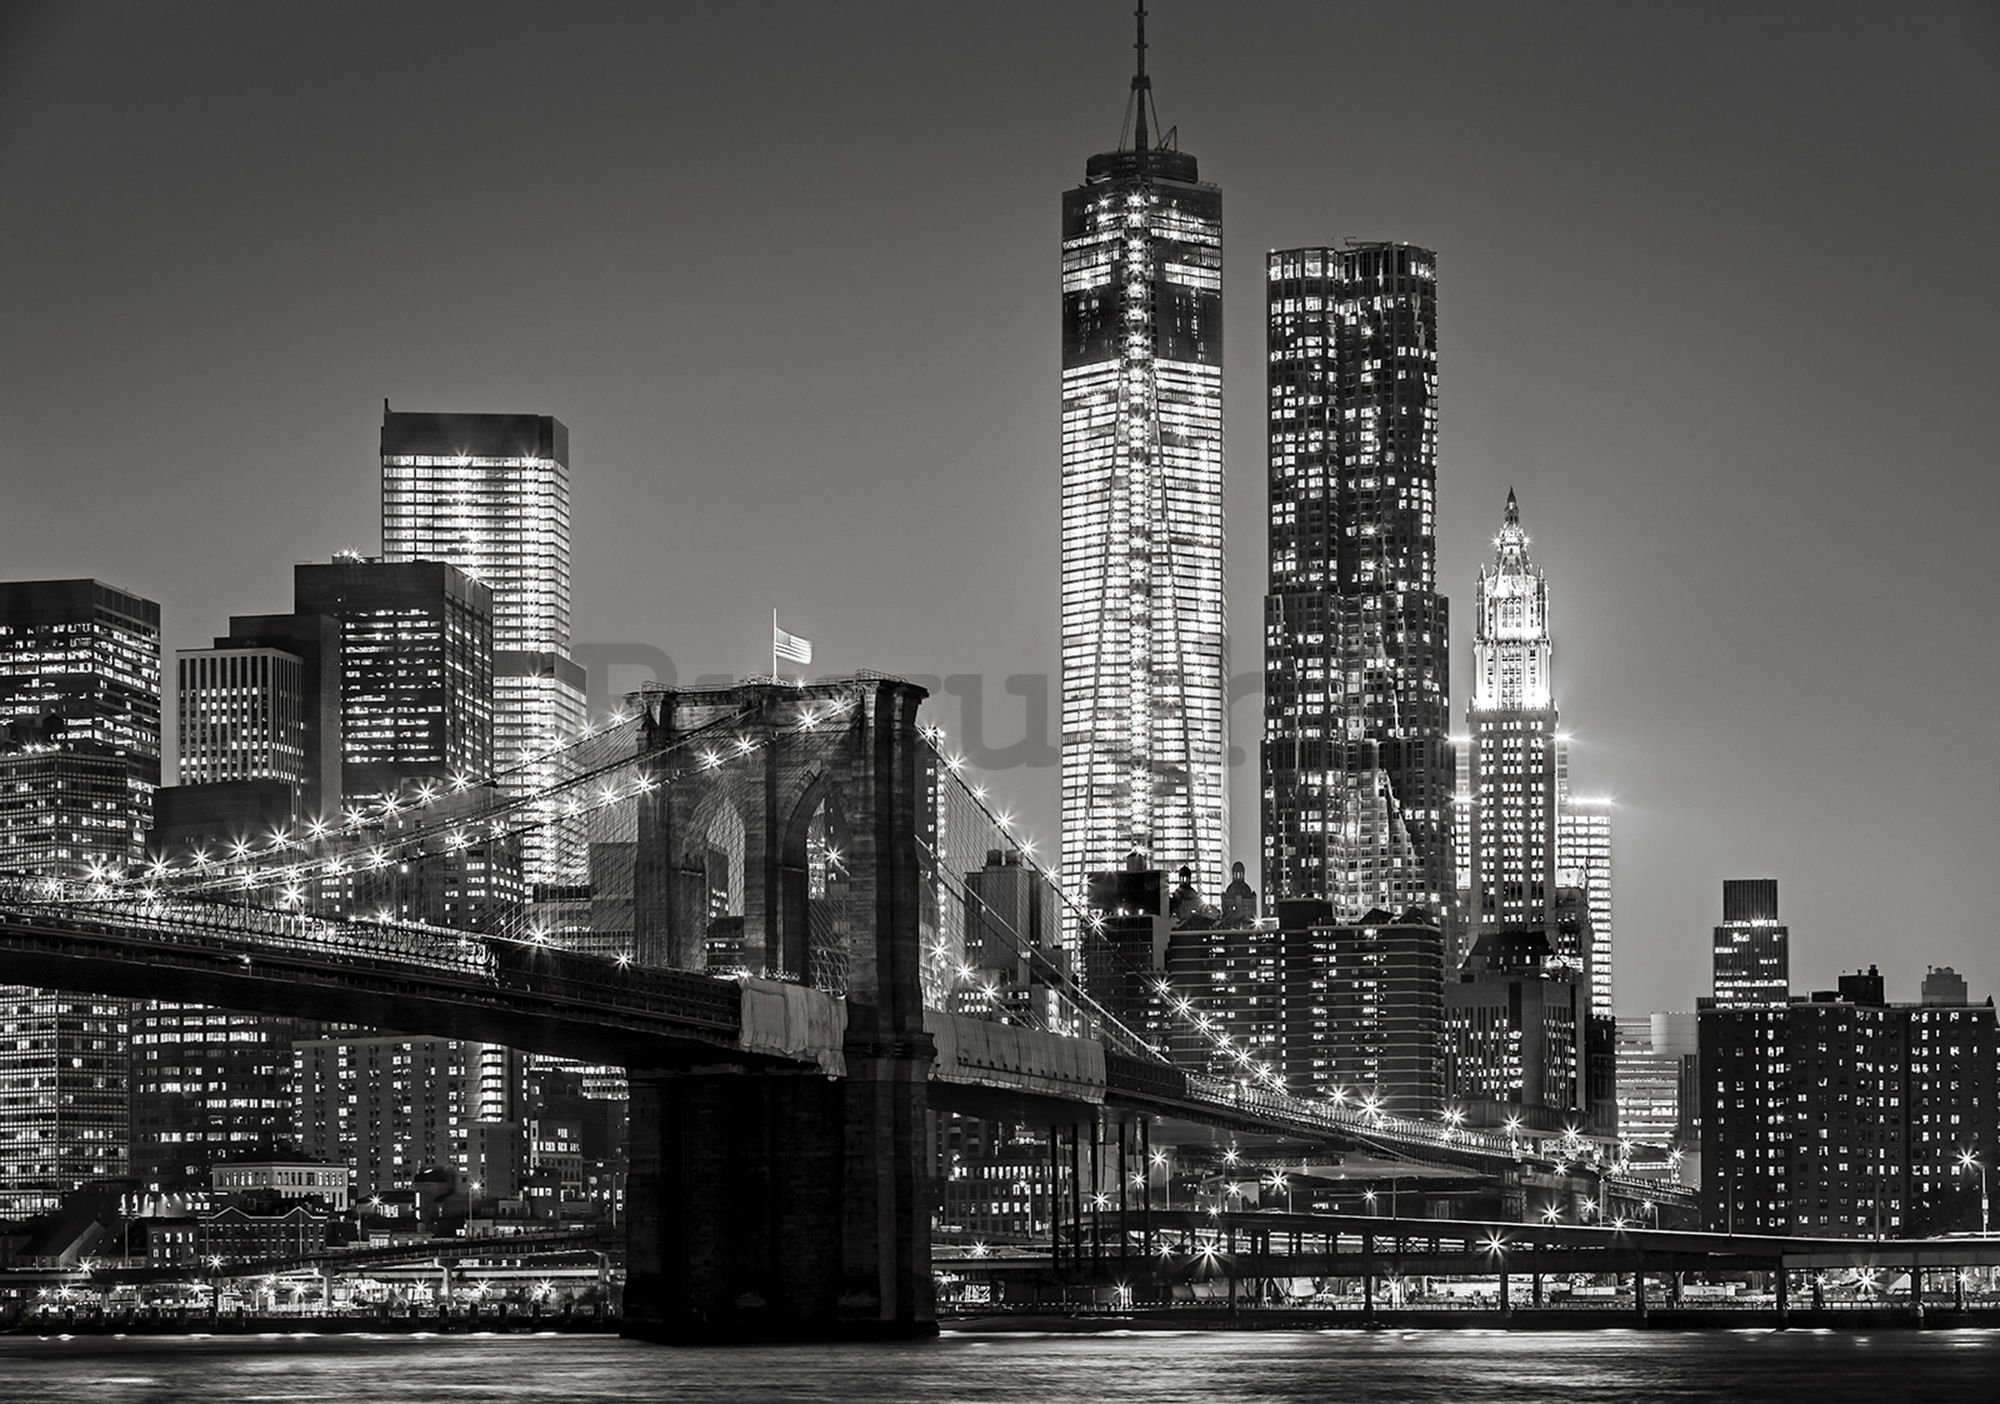 Vlies foto tapeta: Brooklyn Bridge (4) - 254x368 cm